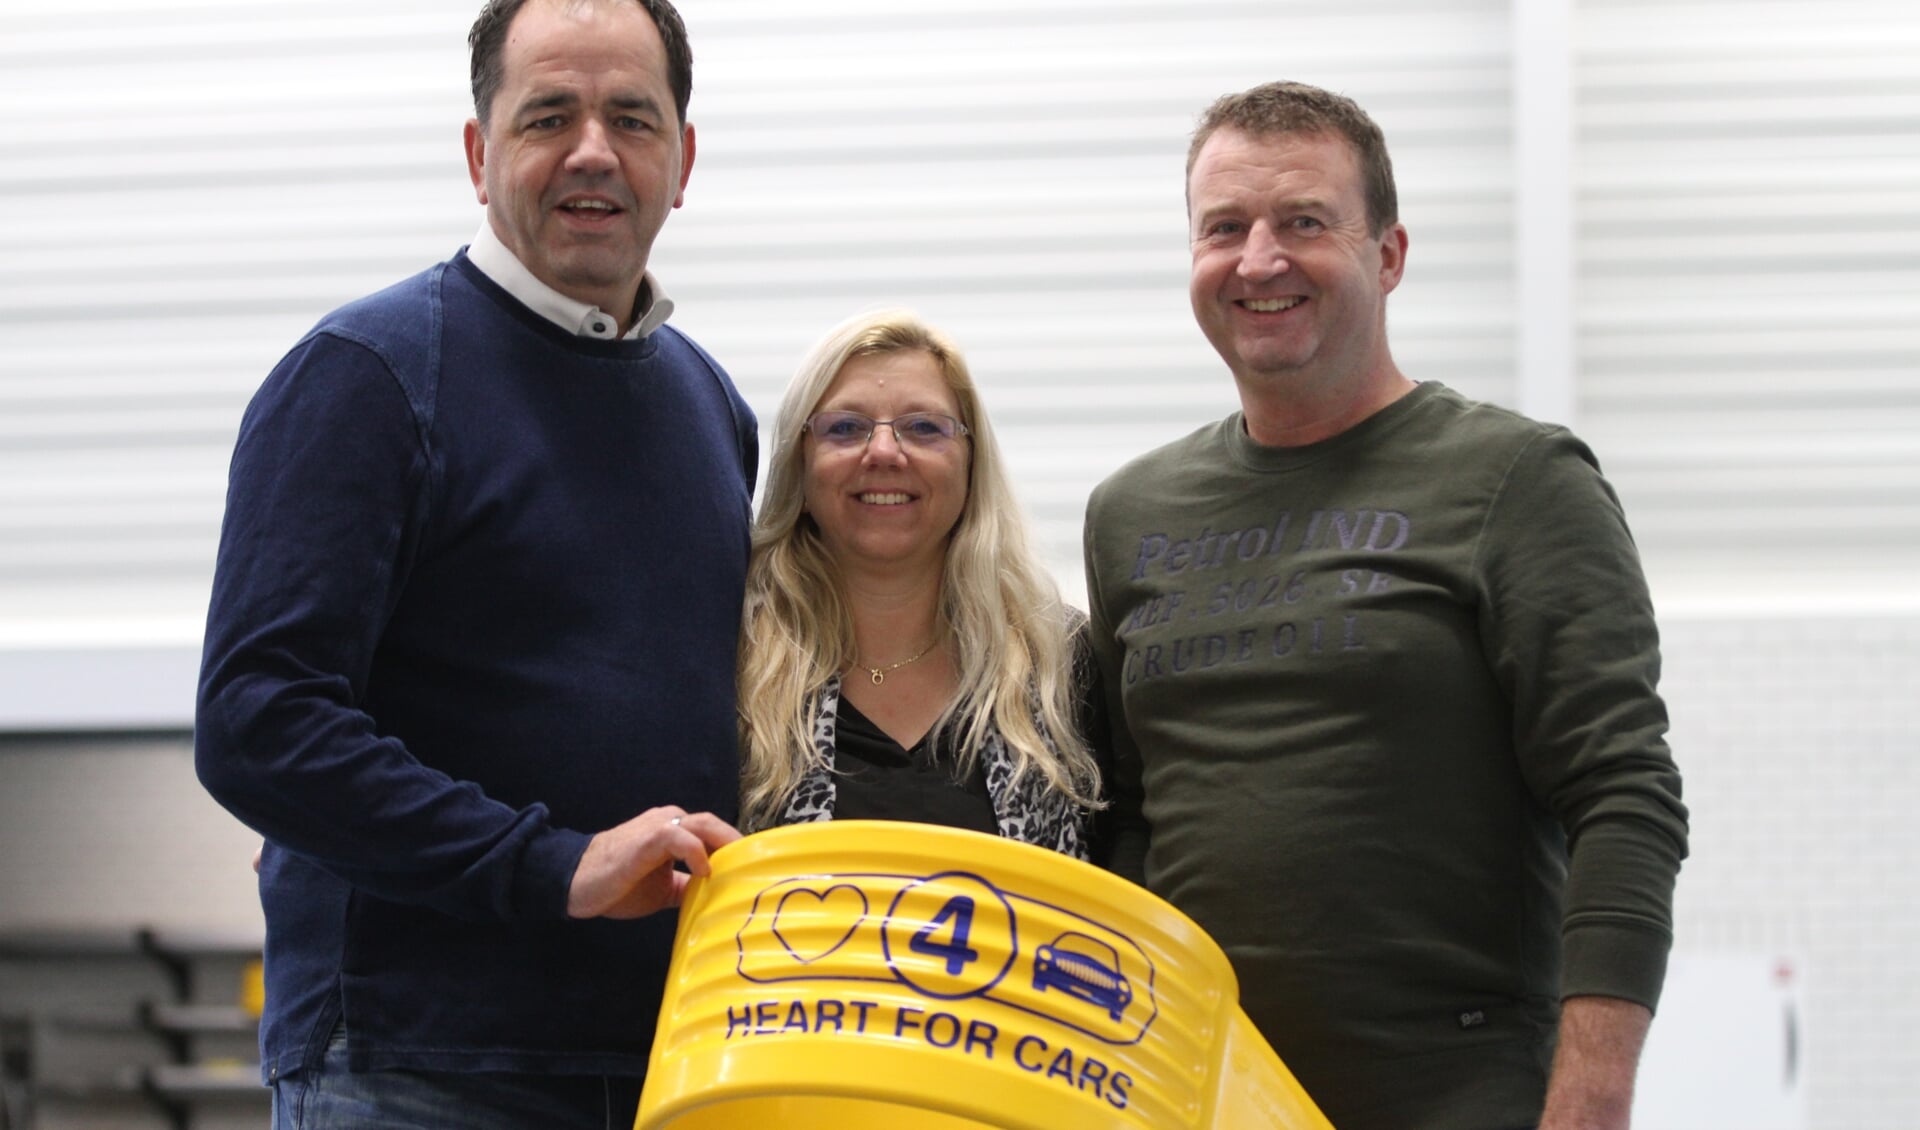 • De nieuwe korfsponsor voor CKC Kinderdijk: Heart for Cars.